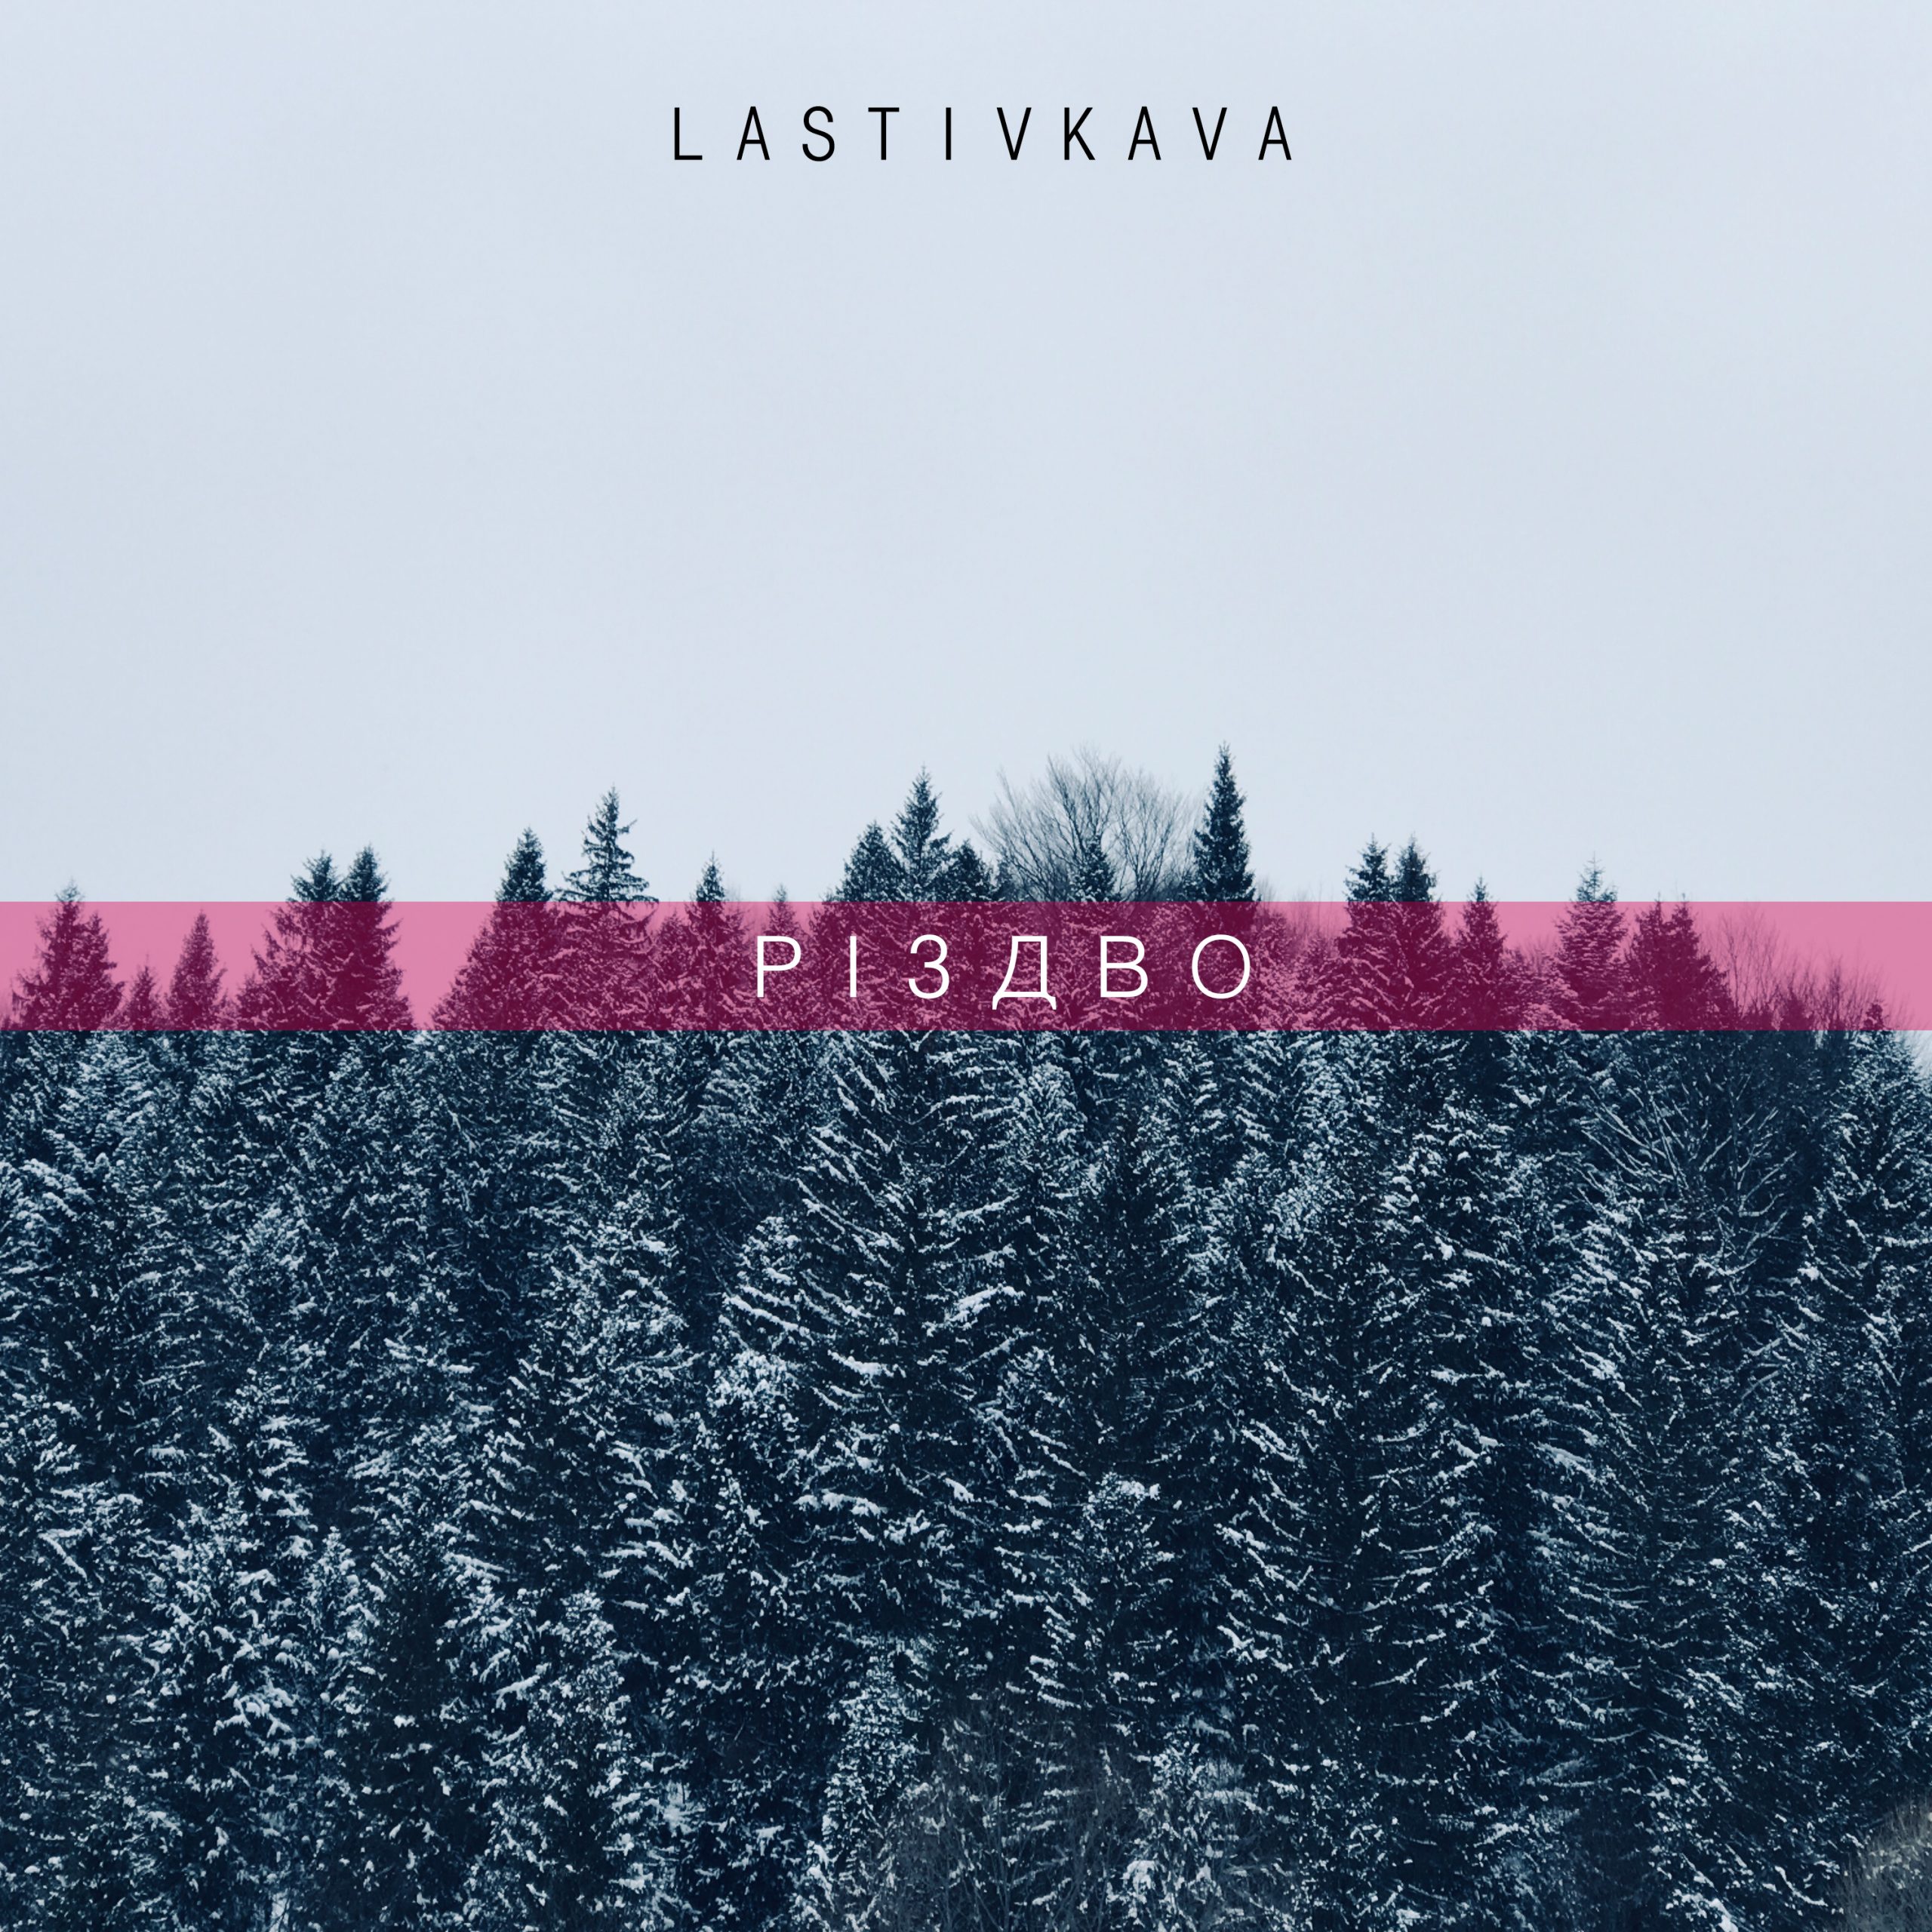 Гурт LASTIVKAVA презентує чуттєвий різдвяний сингл